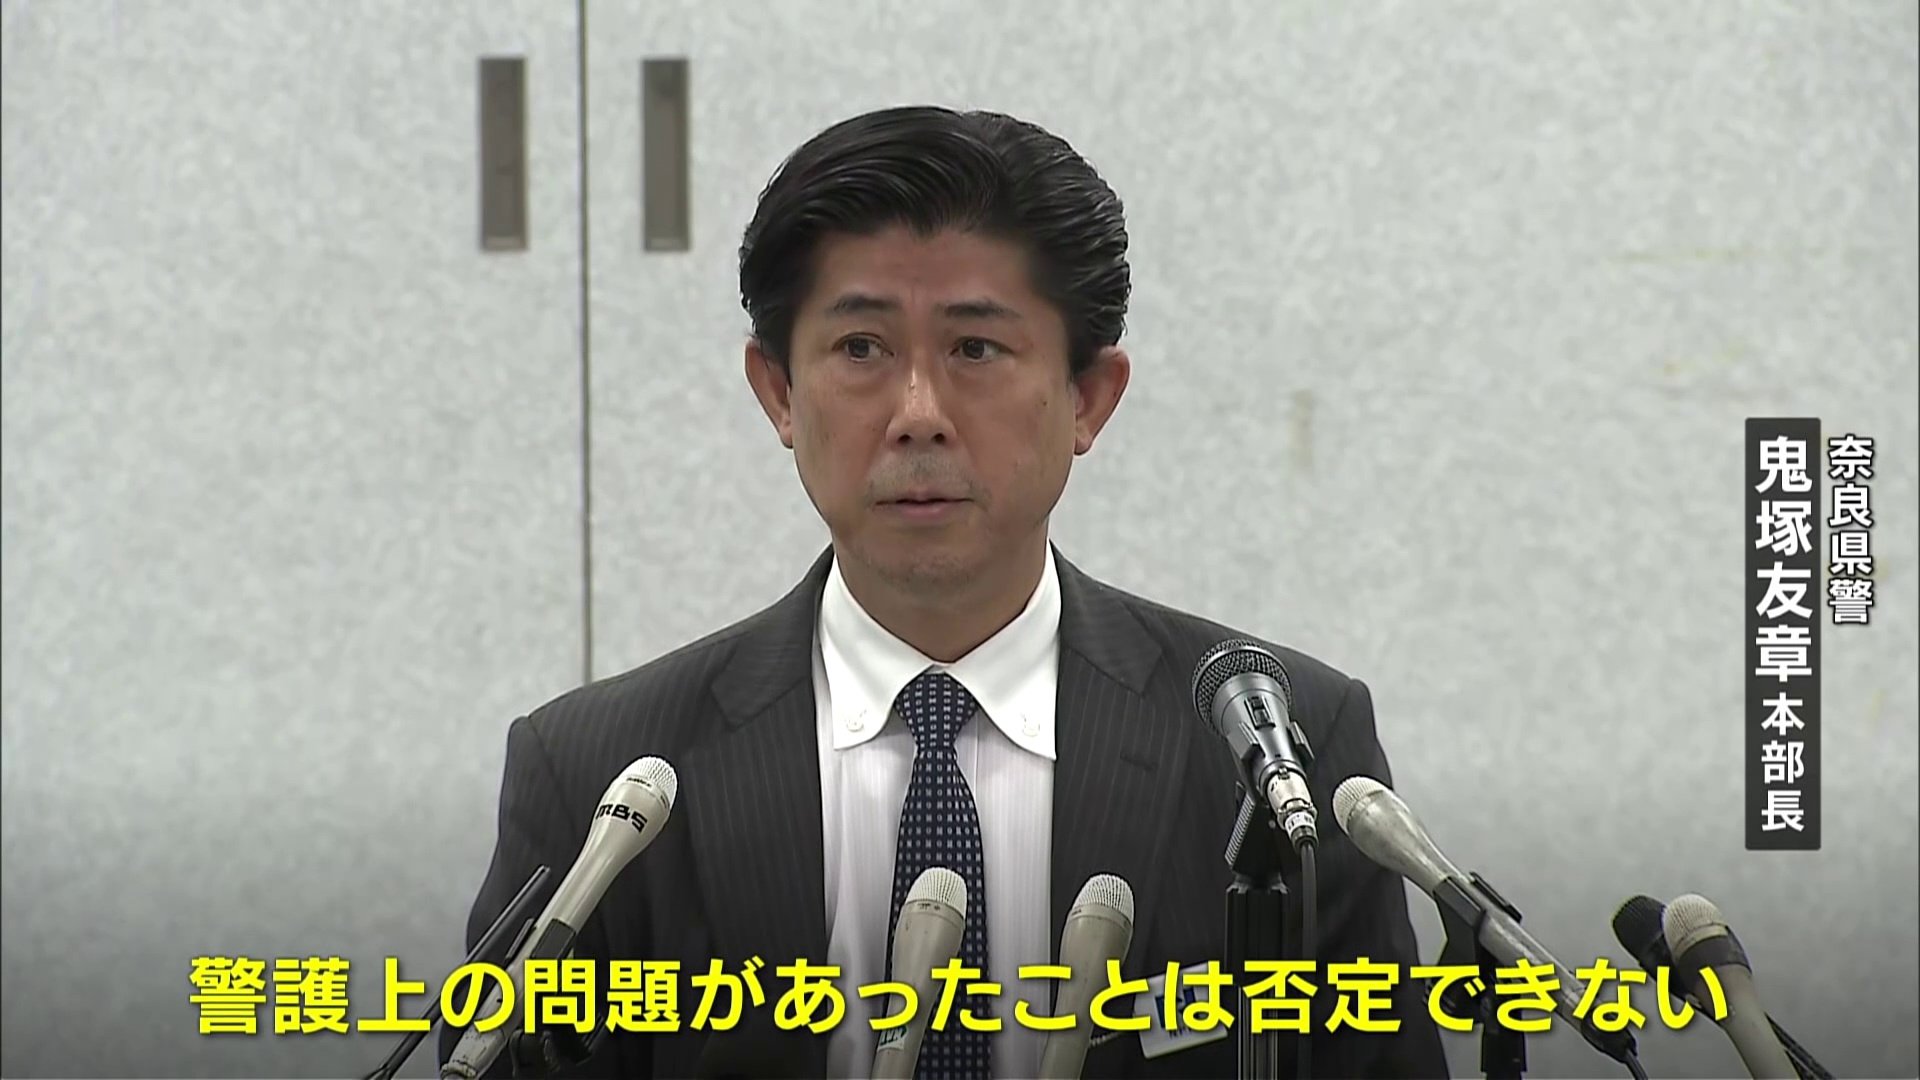 安倍元総理銃撃で奈良県警トップ「警護上の問題があった」